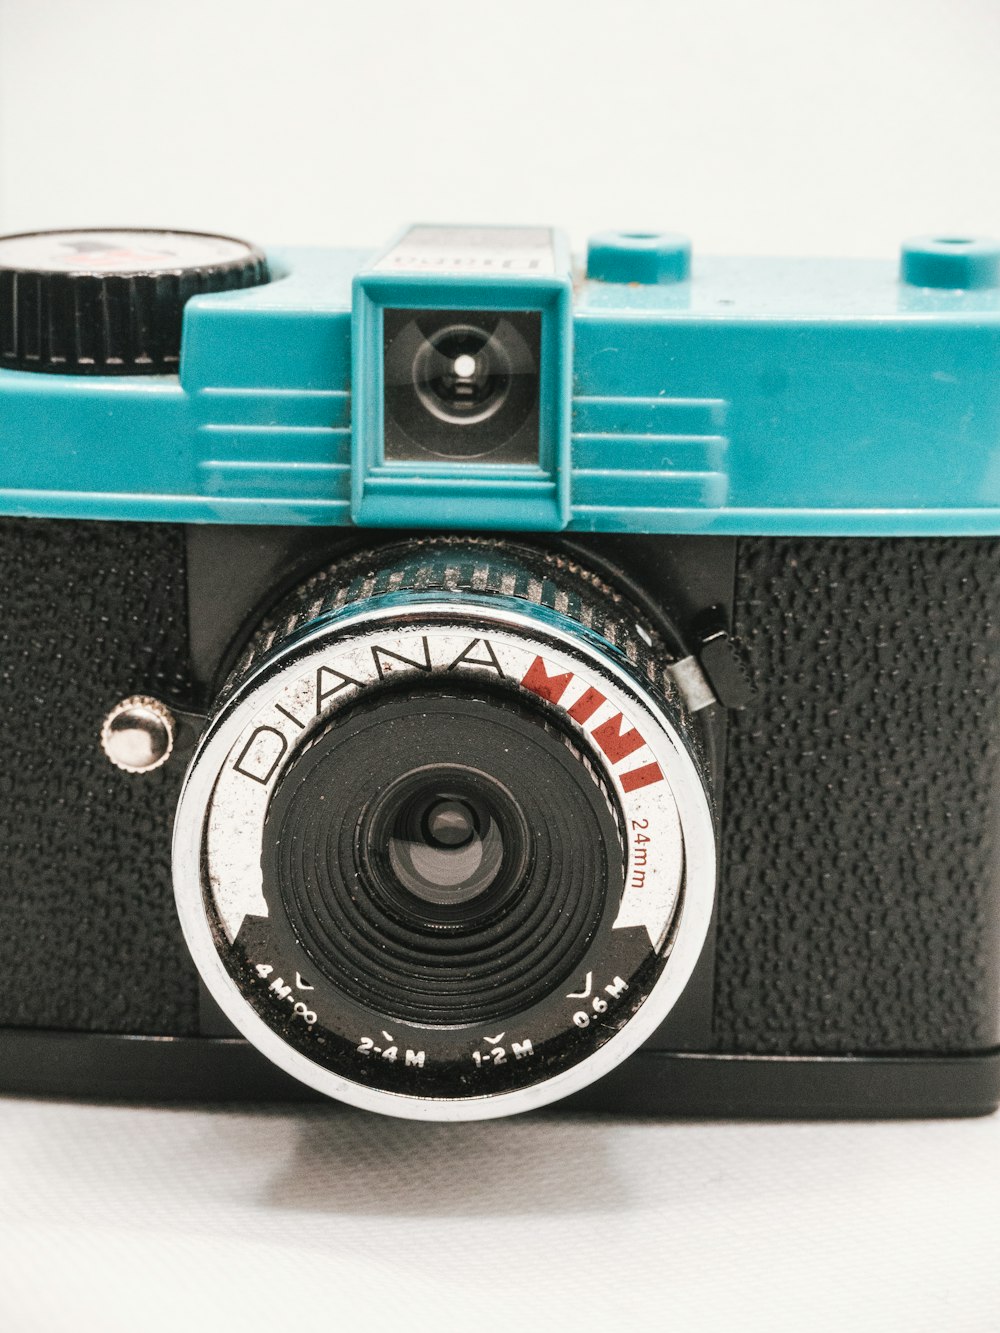 blue and black camera lens